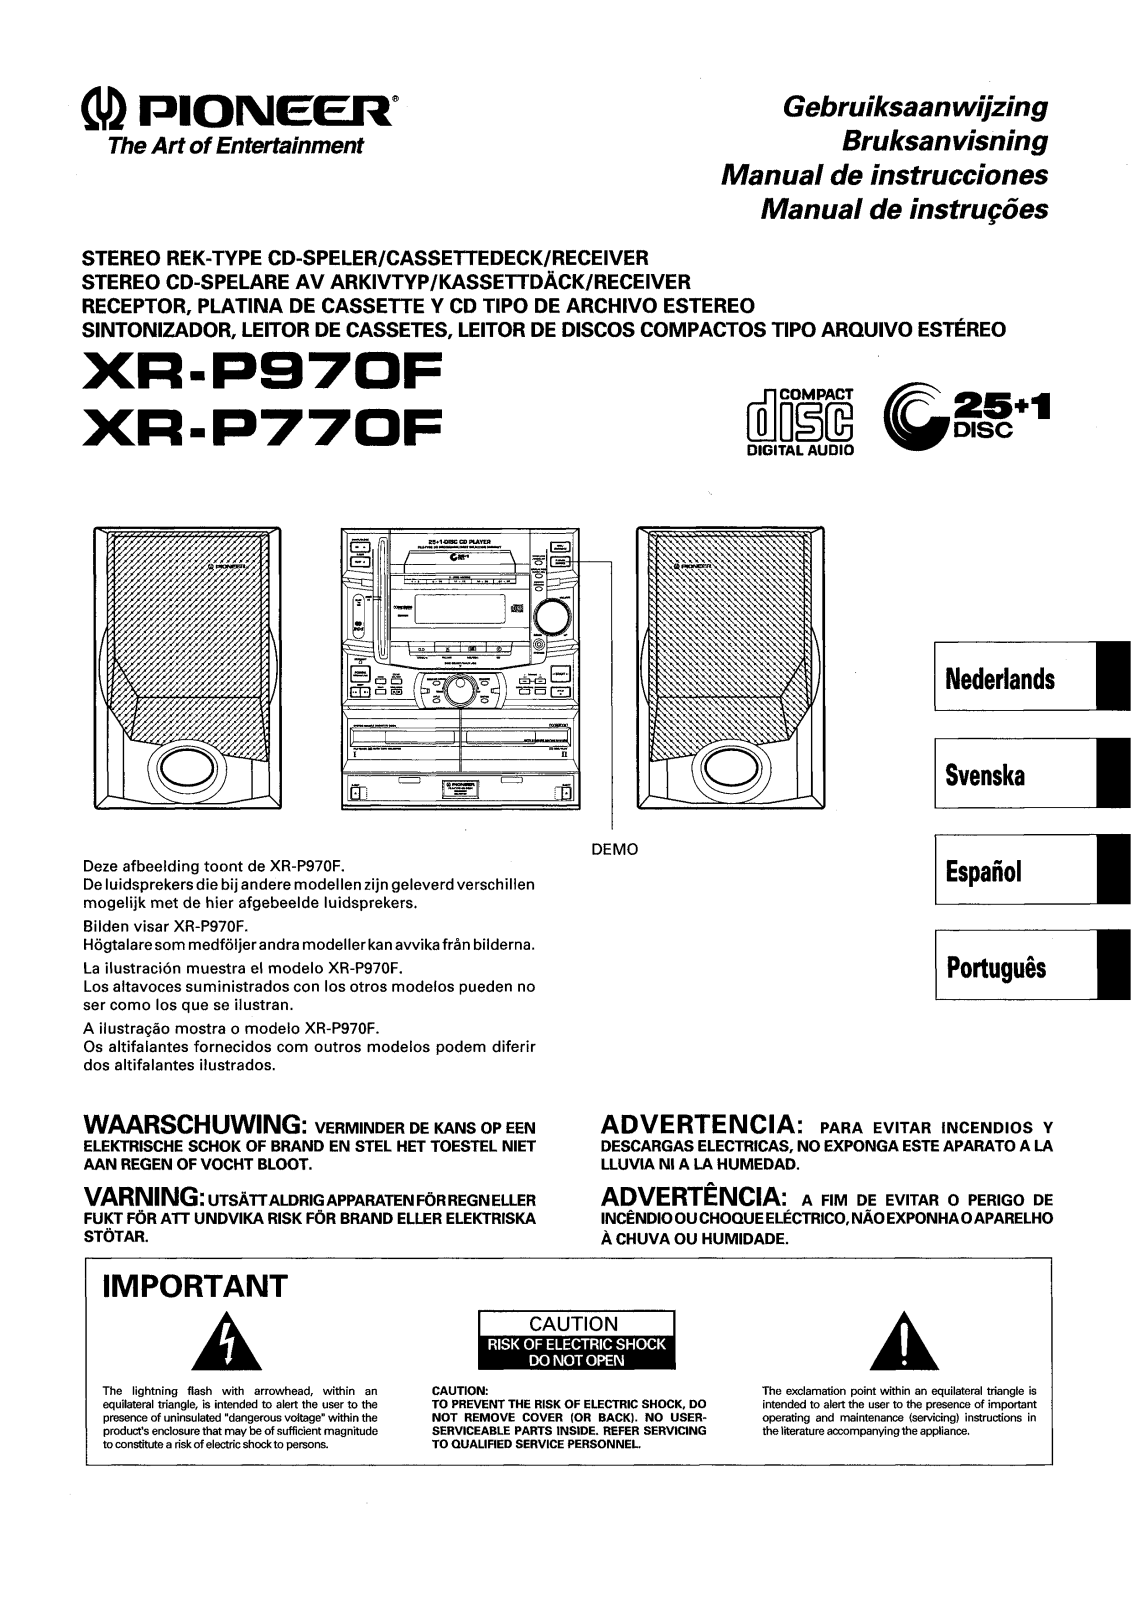 Pioneer XR-P770F, XR-P970F Manual